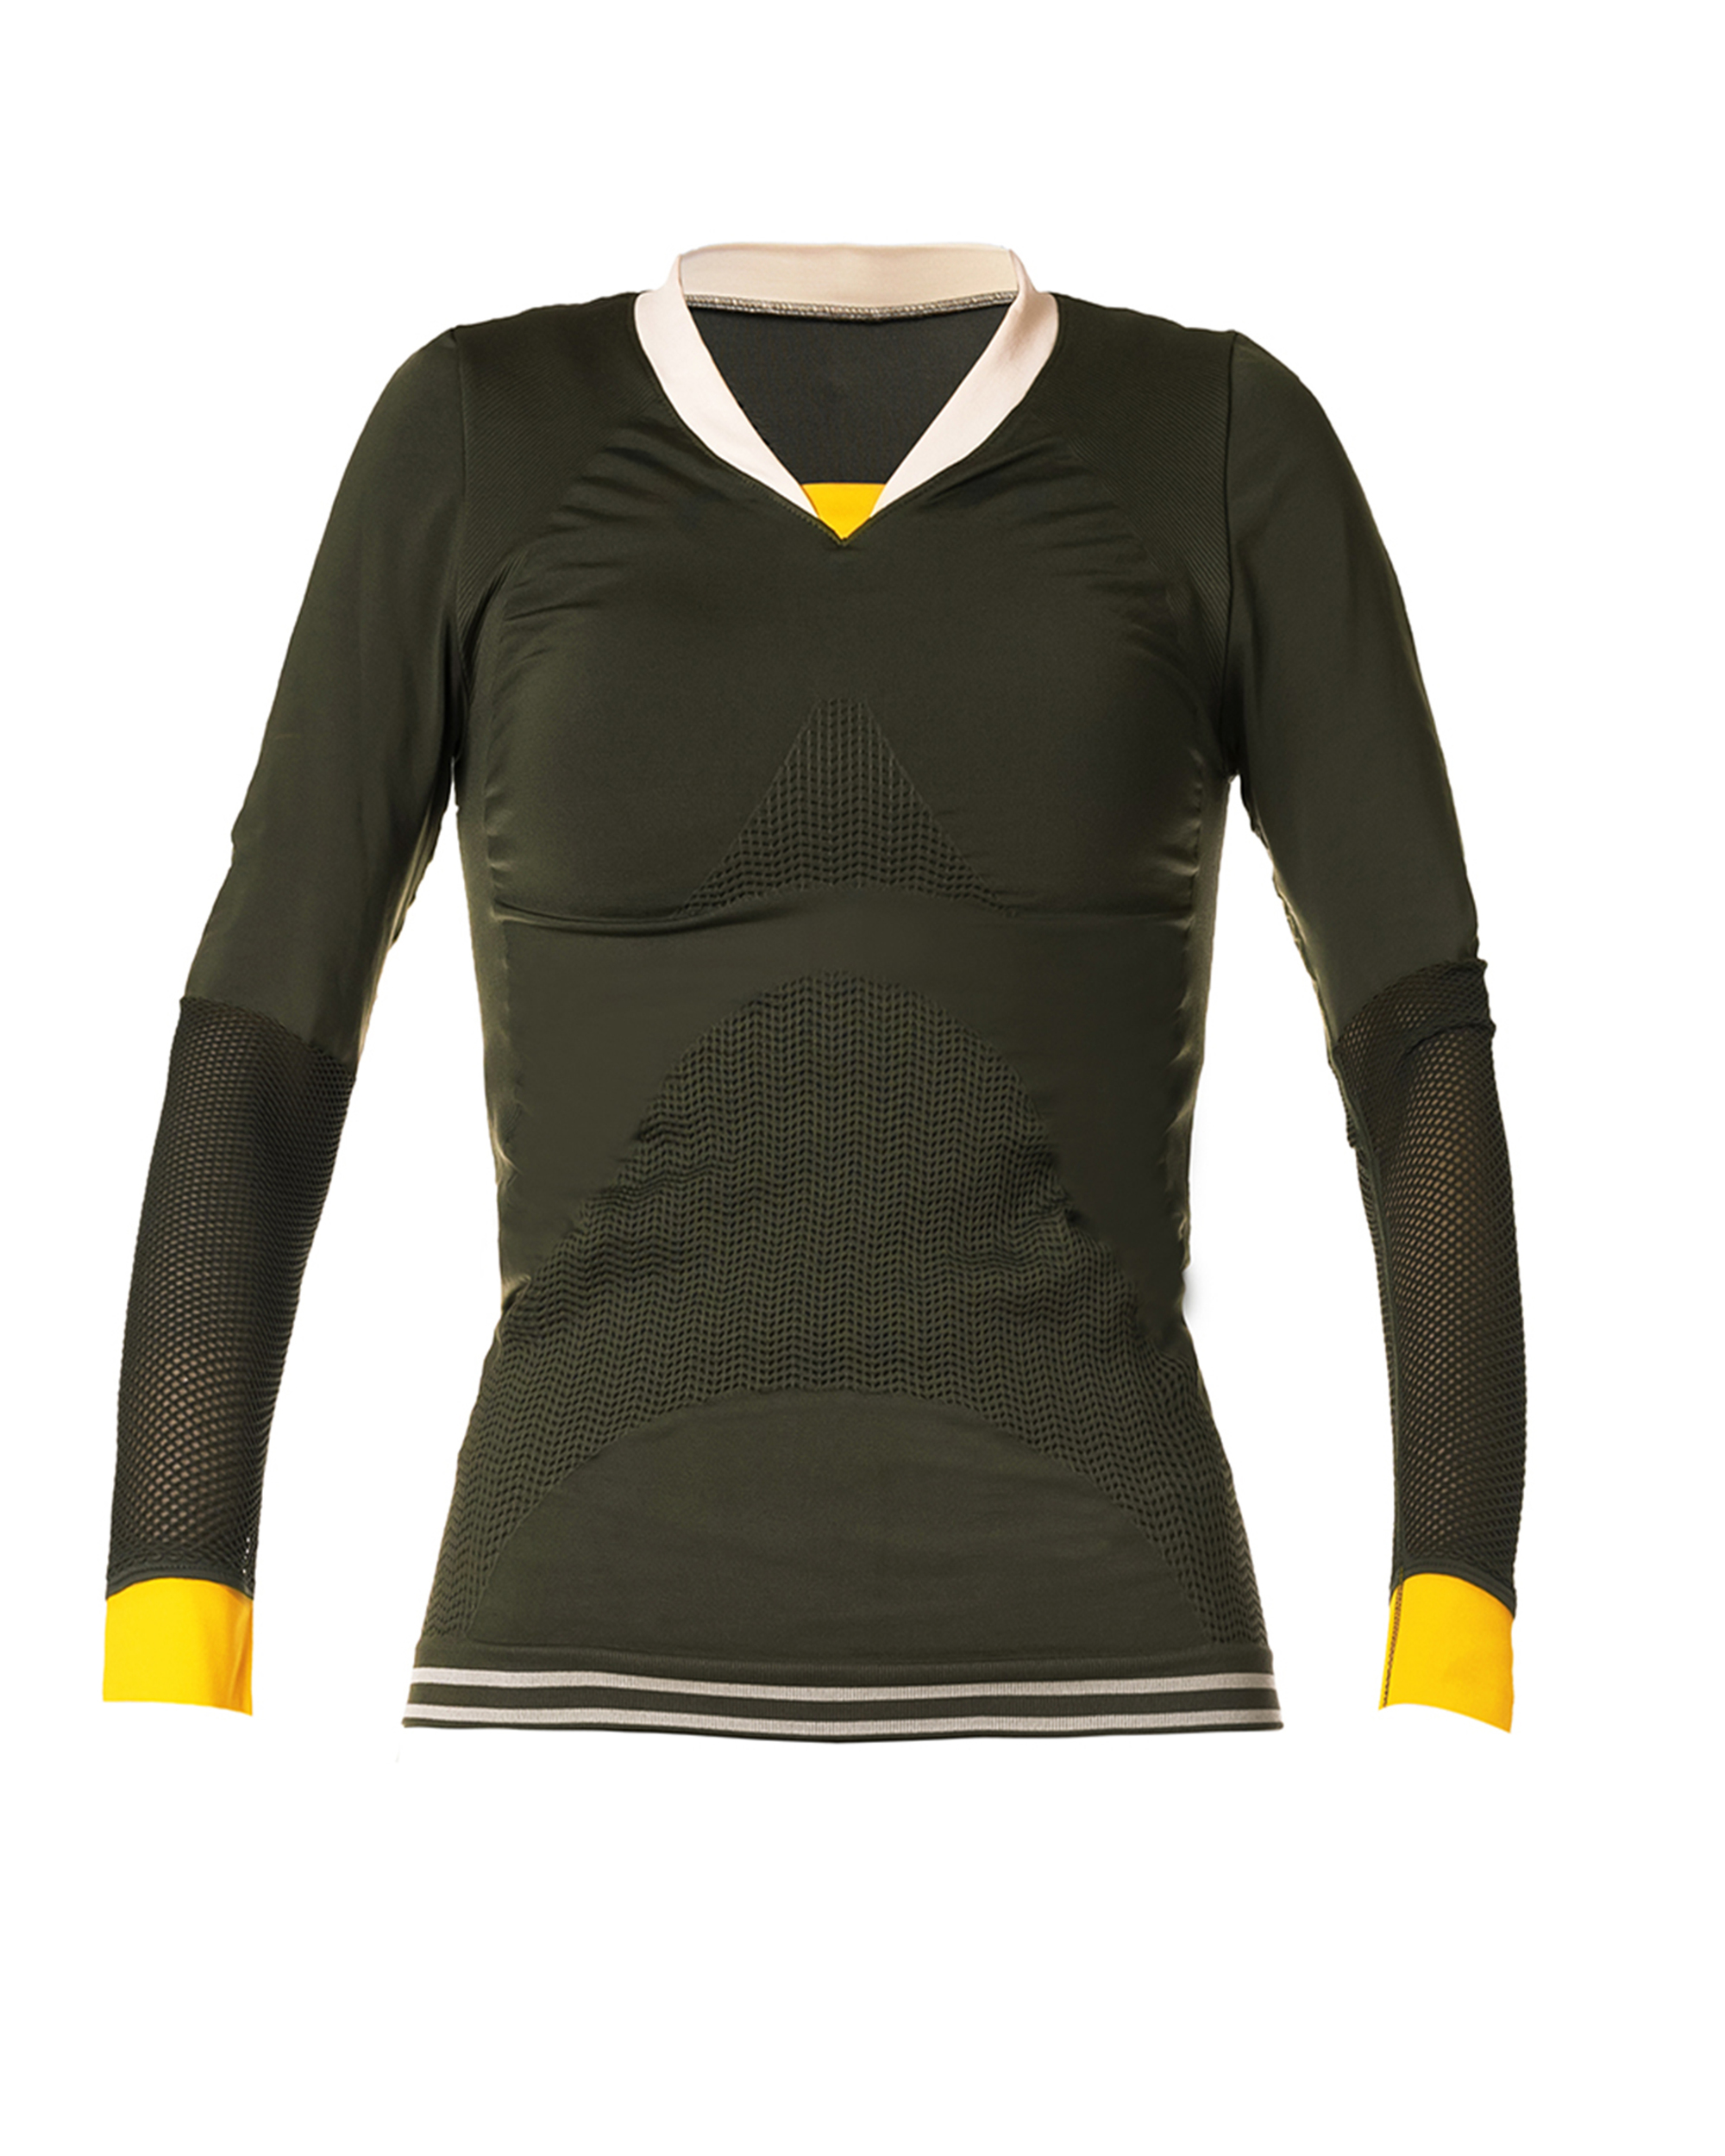 camiseta-deportiva-mujer-manga-larga-sin-costuras-verde-idawen